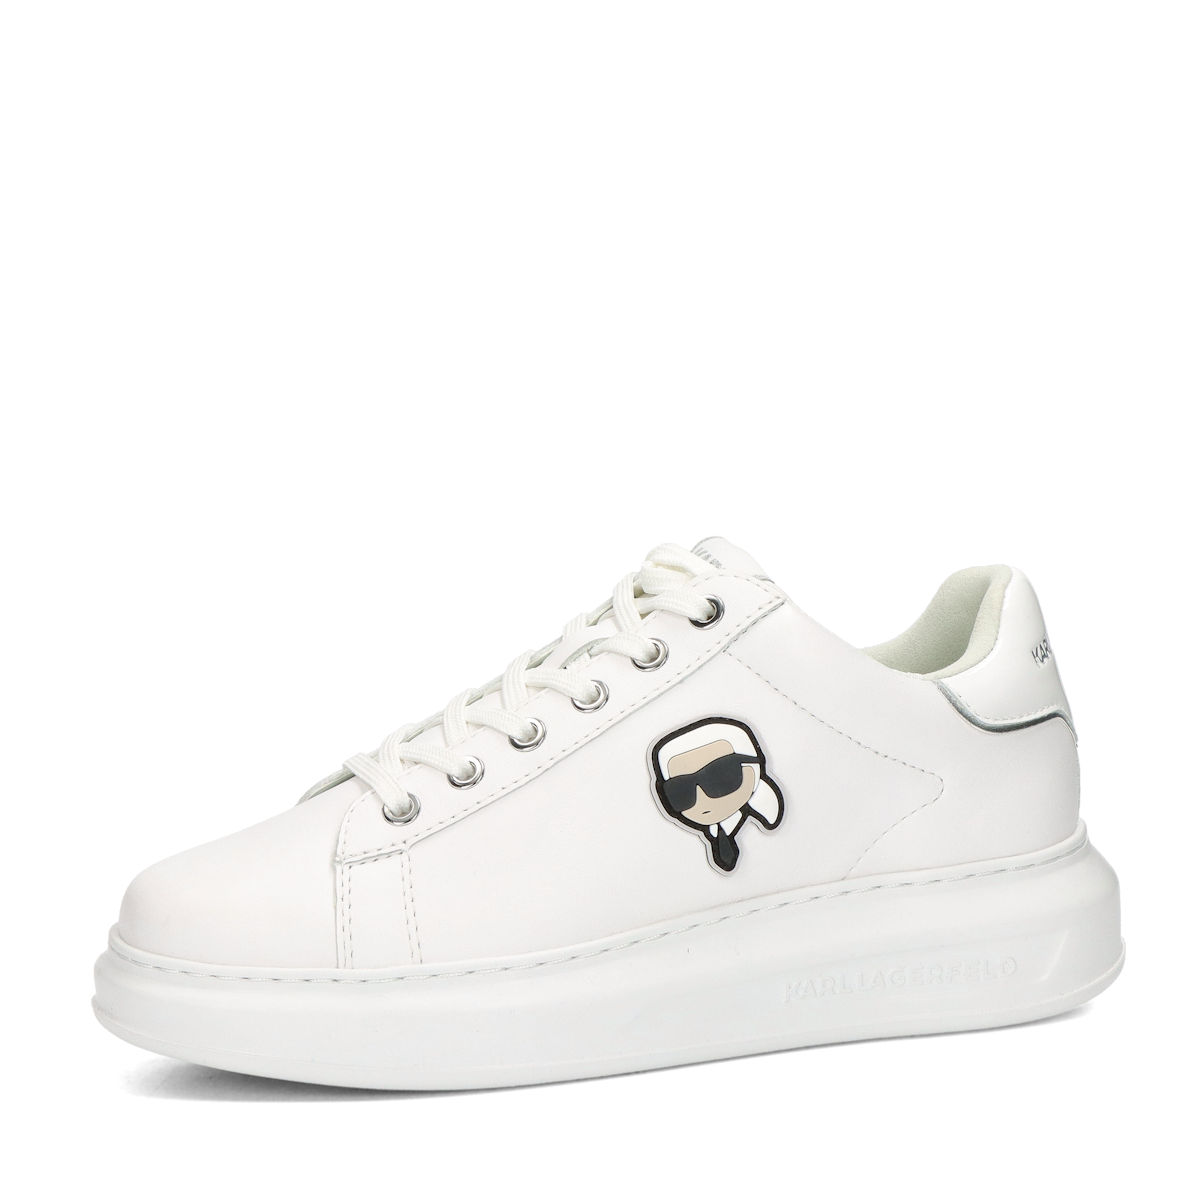 Karl Lagerfeld women´s fashion sneaker - white